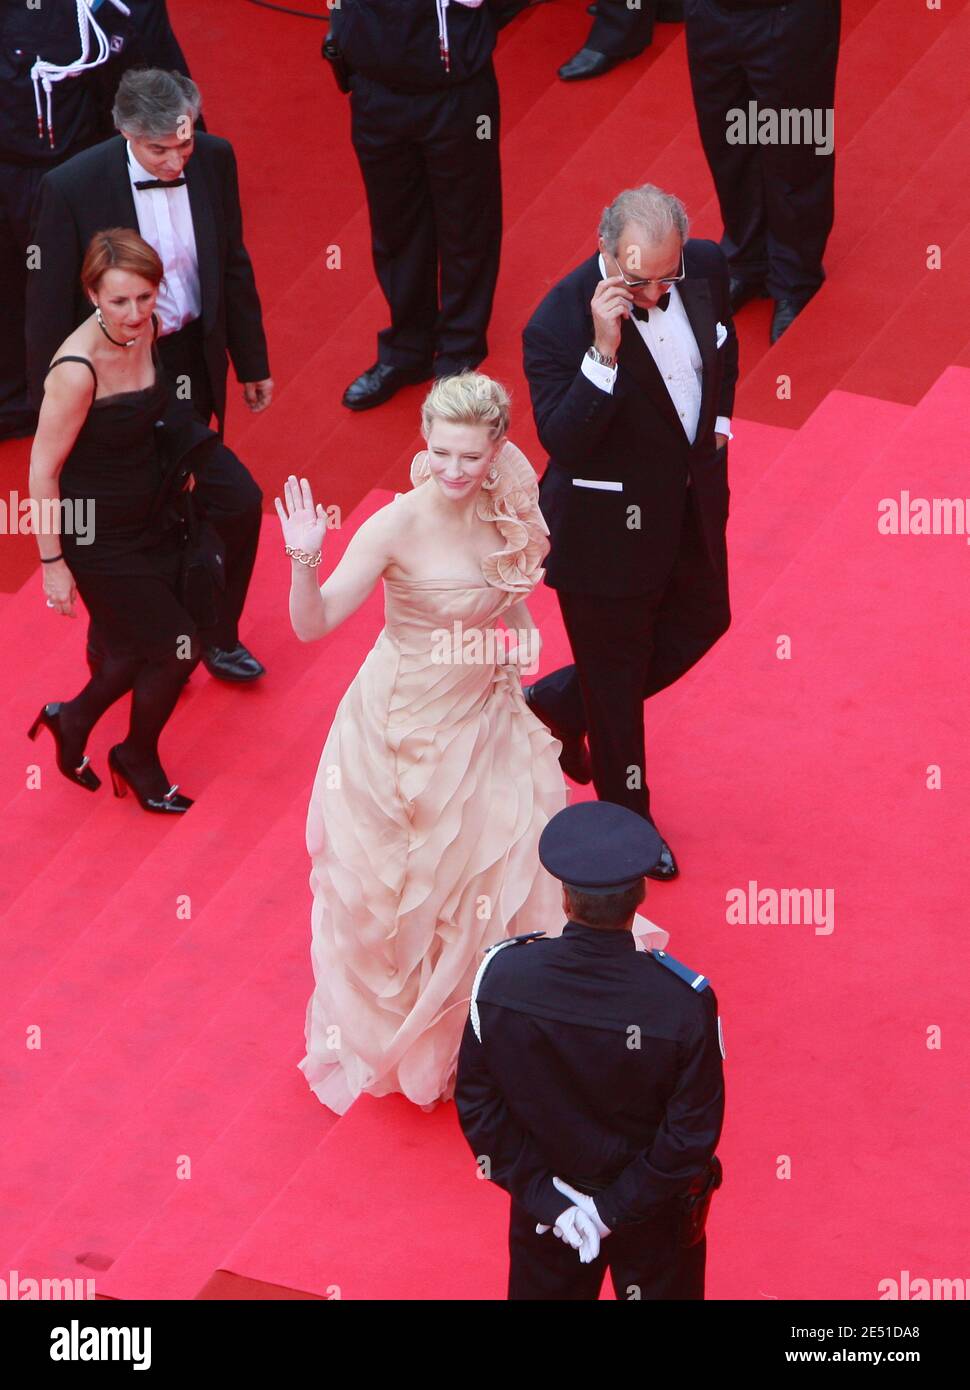 Cate Blanchett sah, wie sie am 14. Mai 2008 im Palais des Festivals in Cannes, Frankreich, auf dem roten Teppich ankam, um den Film "Blindheit" von Fernando Meirelles zu sehen, der im Wettbewerb und bei der Eröffnung der 61. Internationalen Filmfestspiele von Cannes gezeigt wurde. Foto-Pool von Arsov/ABACAPRESS.COM Stockfoto